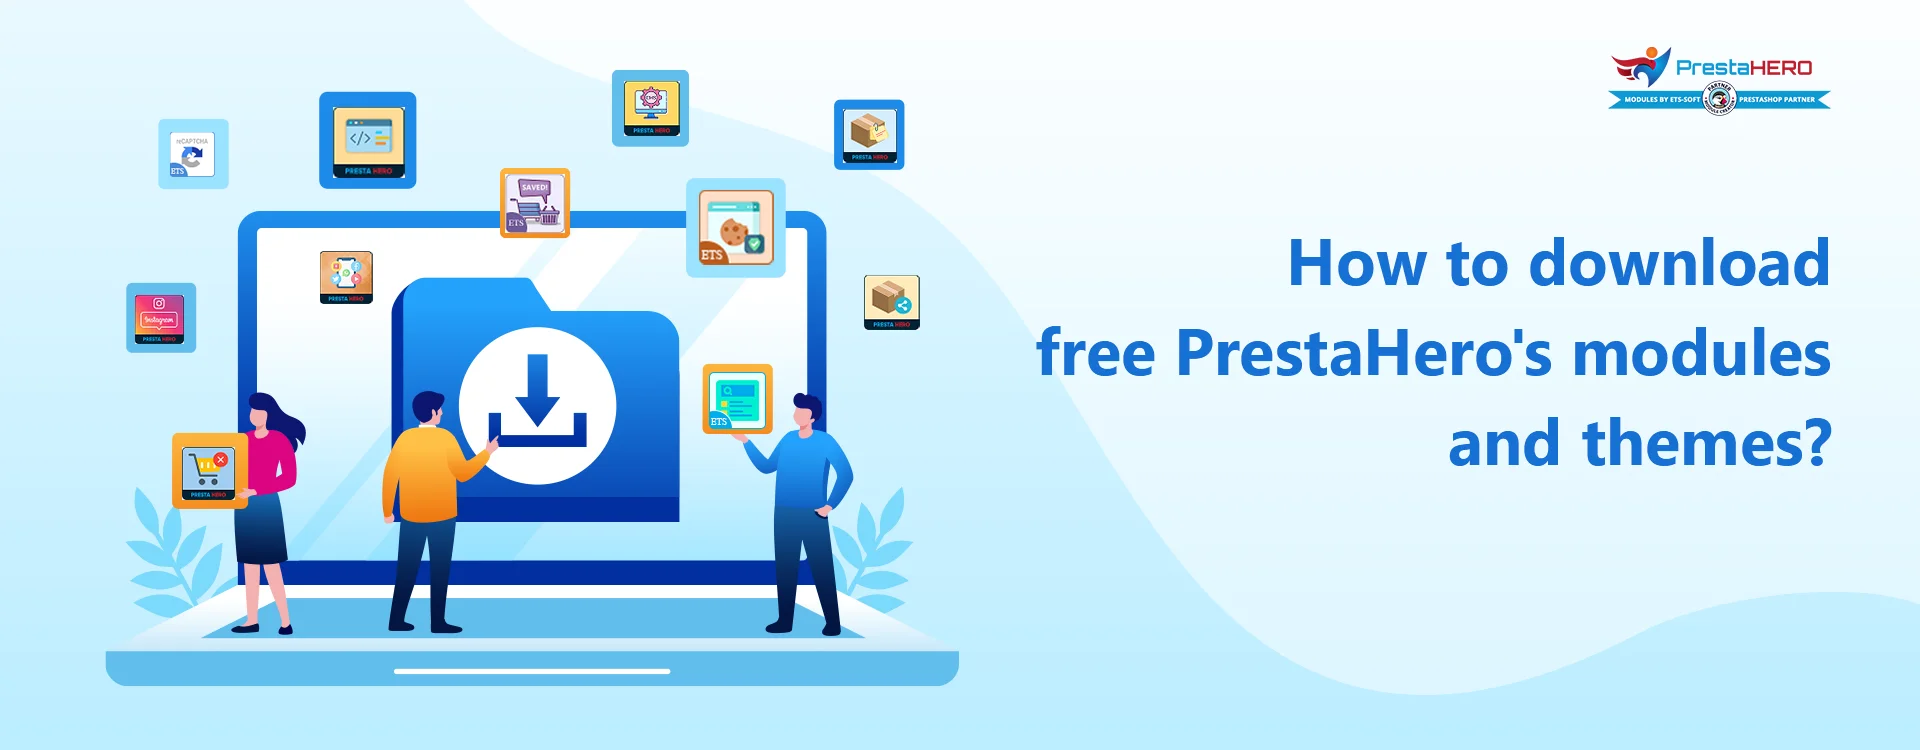 ¿Cómo descargar módulos y temas de PrestaHero gratis?